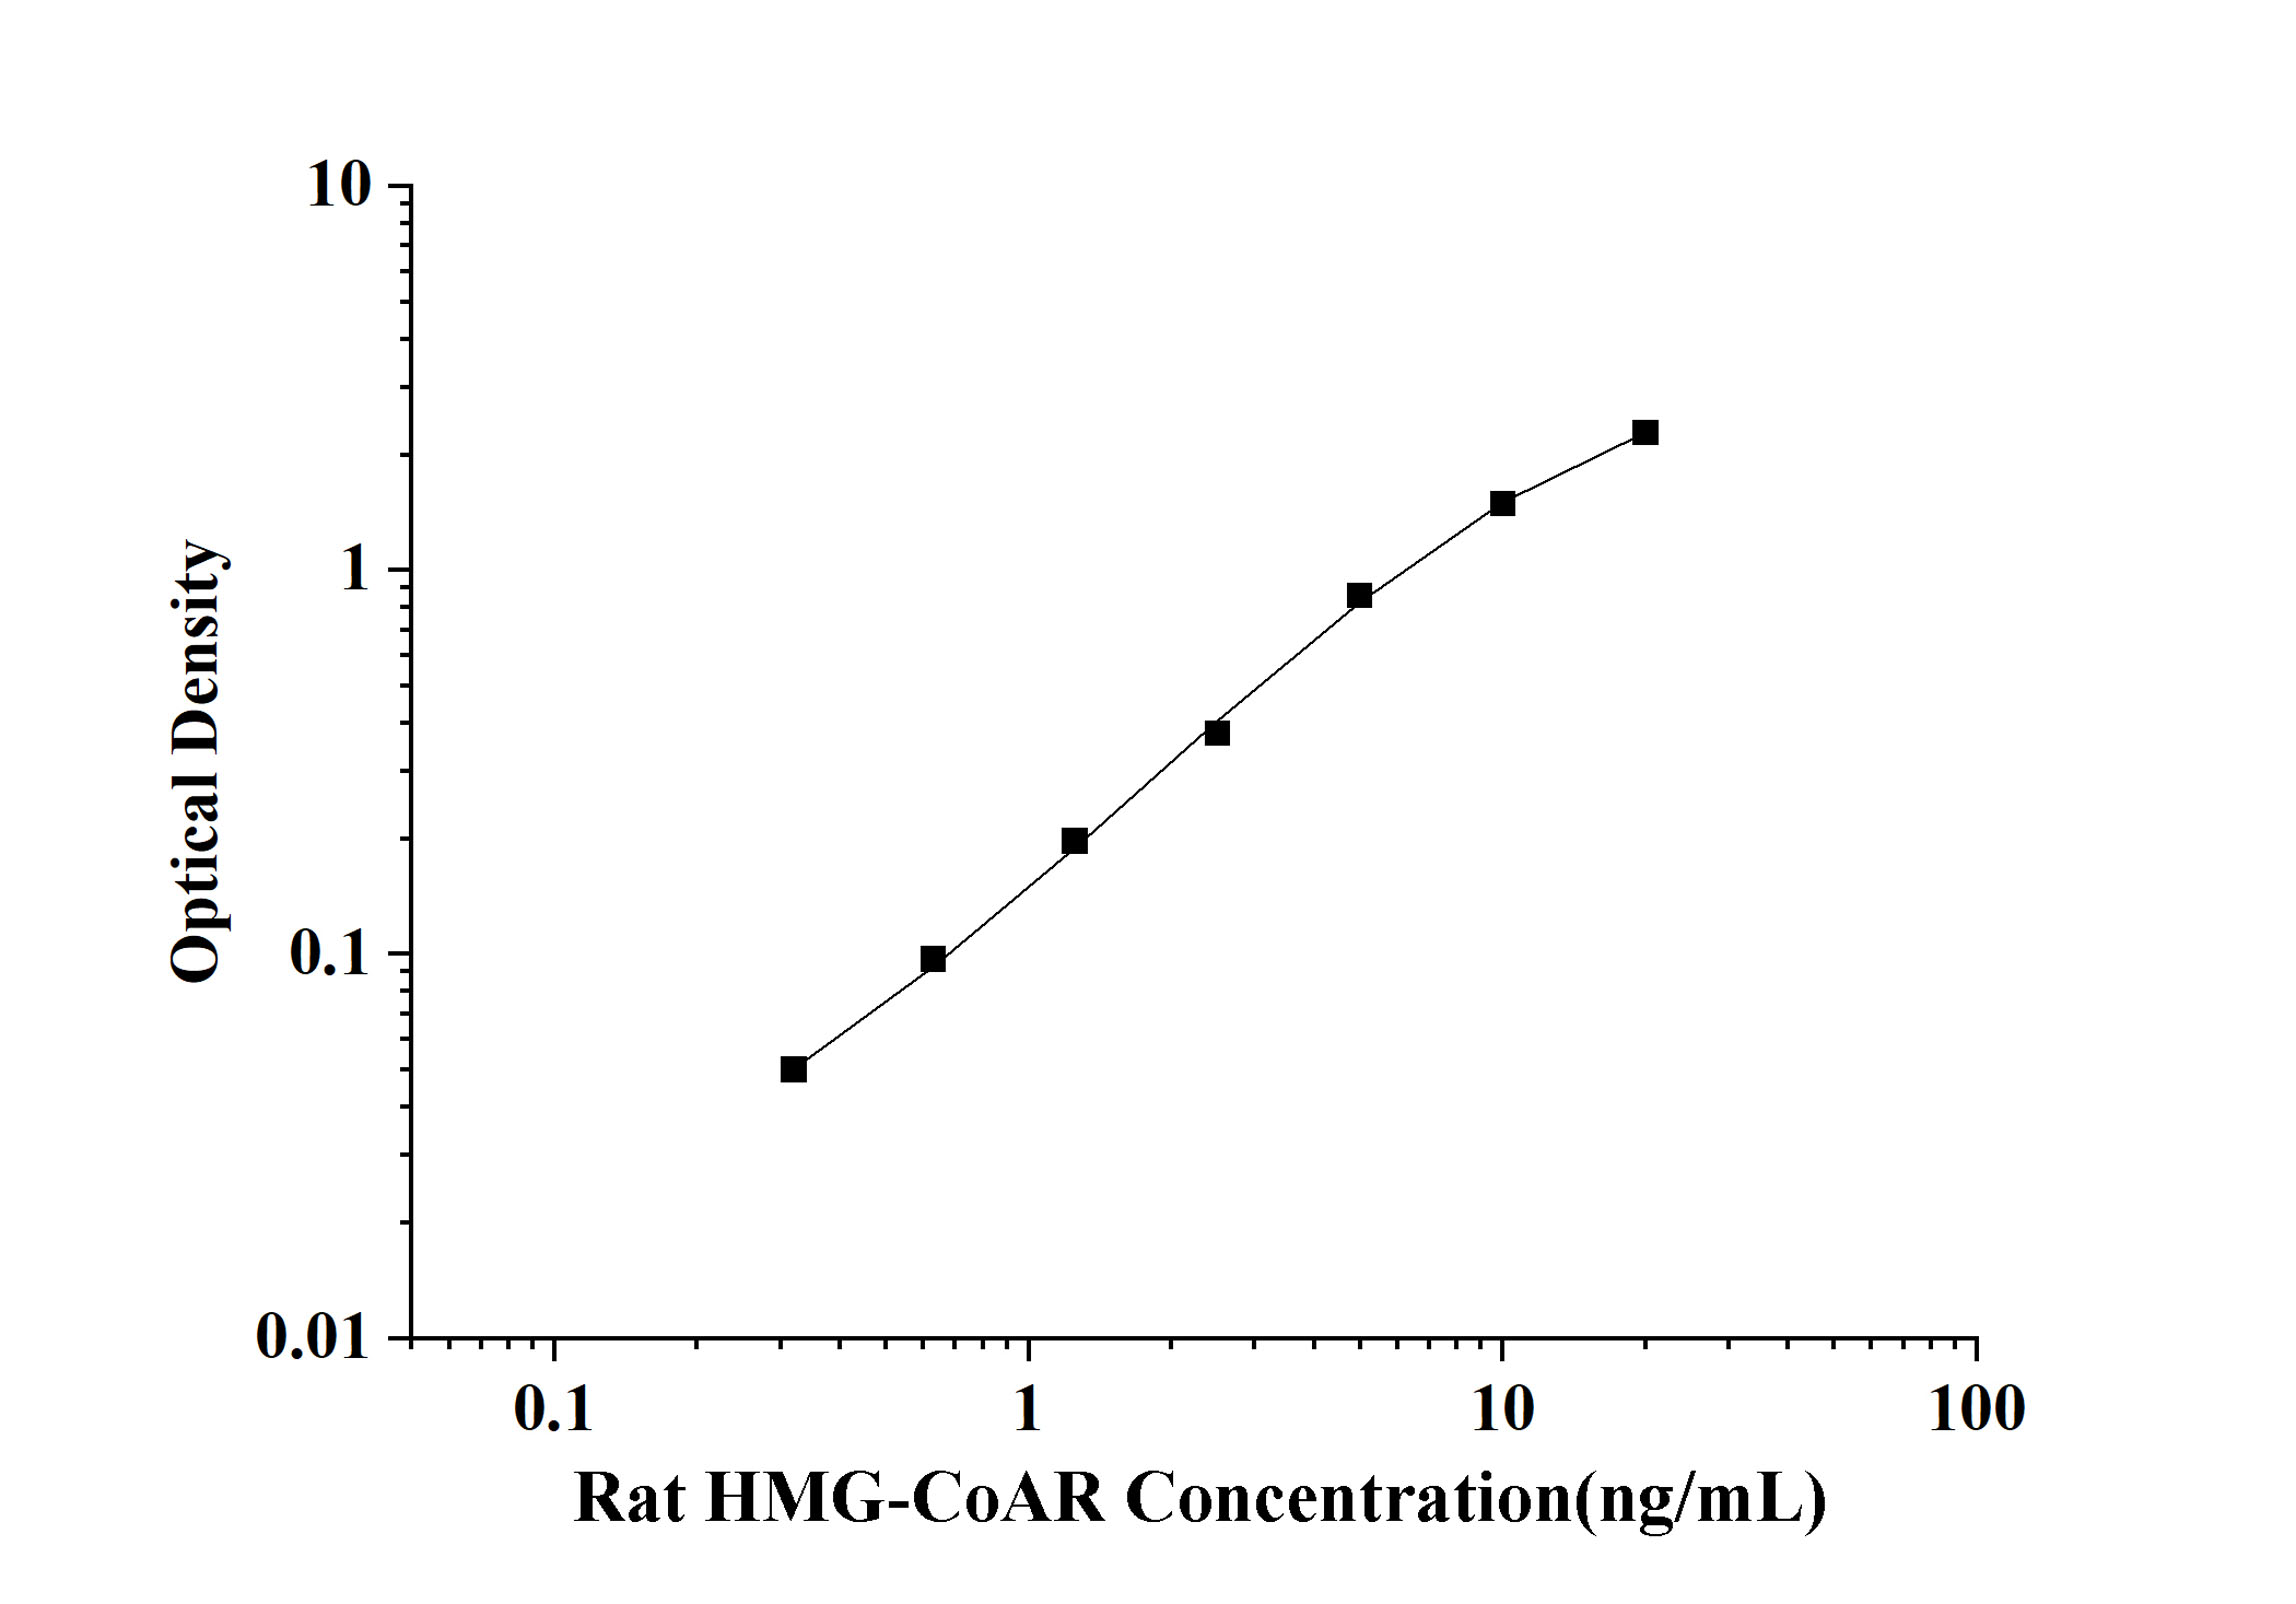 Rat HMG-CoAR(3-Hydroxy-3-Methylglutaryl Coenzyme A Reductase) ELISA Kit